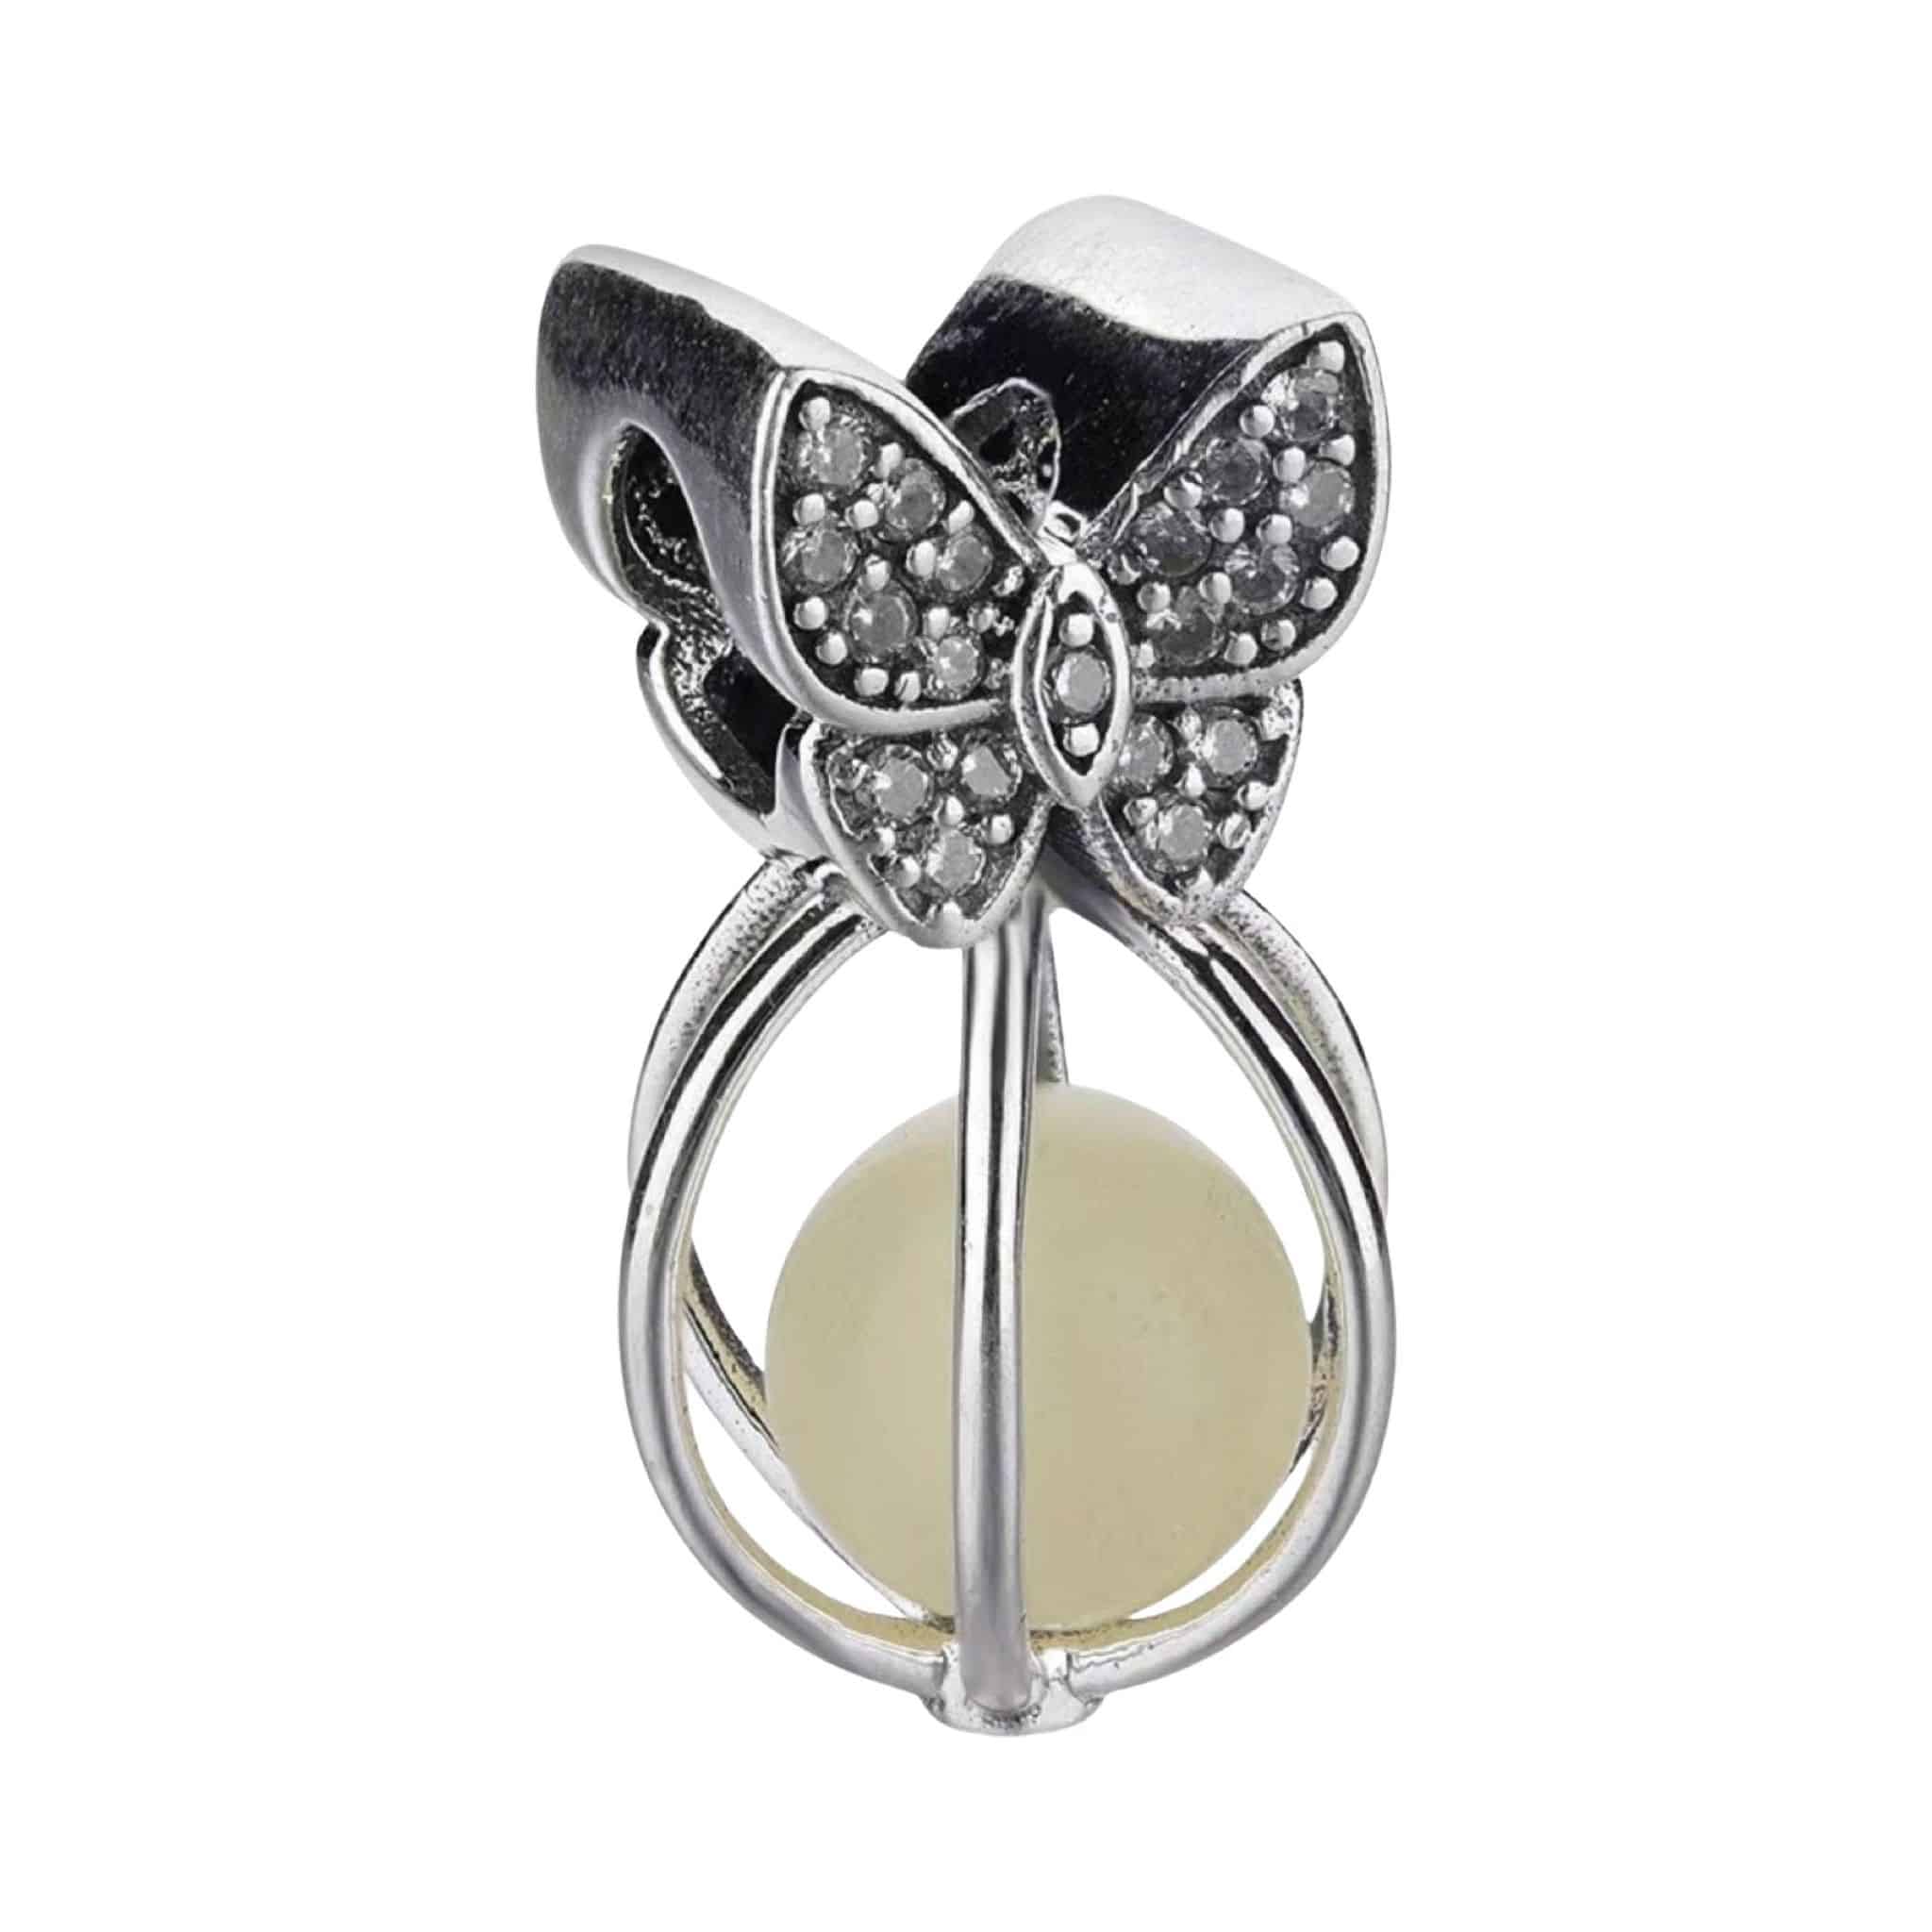 Product Afbeelding Voor en Achteraanzicht van onze prachtige glow in de dark vlinder. Deze vlinder is gemaakt van 925 sterling zilver en helemaal ingelegd met zirkonia's. Deze bead butterfly heeft een kooi met balletje die licht geeft.